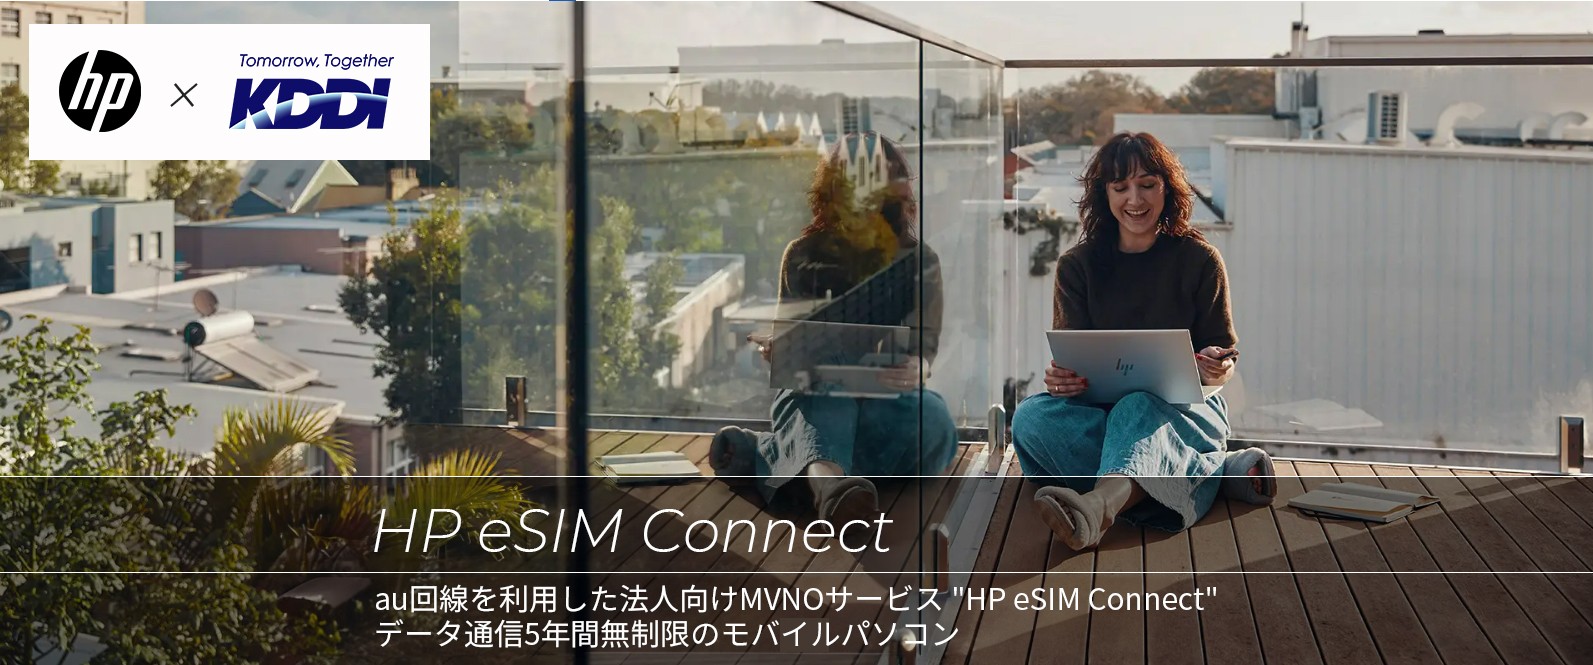 hp と KDDI による共同製品であるHP ESIM Connectとは、au回線を利用した法人向け MVNOサービス HP eSIM Connect データ通信5年間無制限のモバイルパソコンのことです